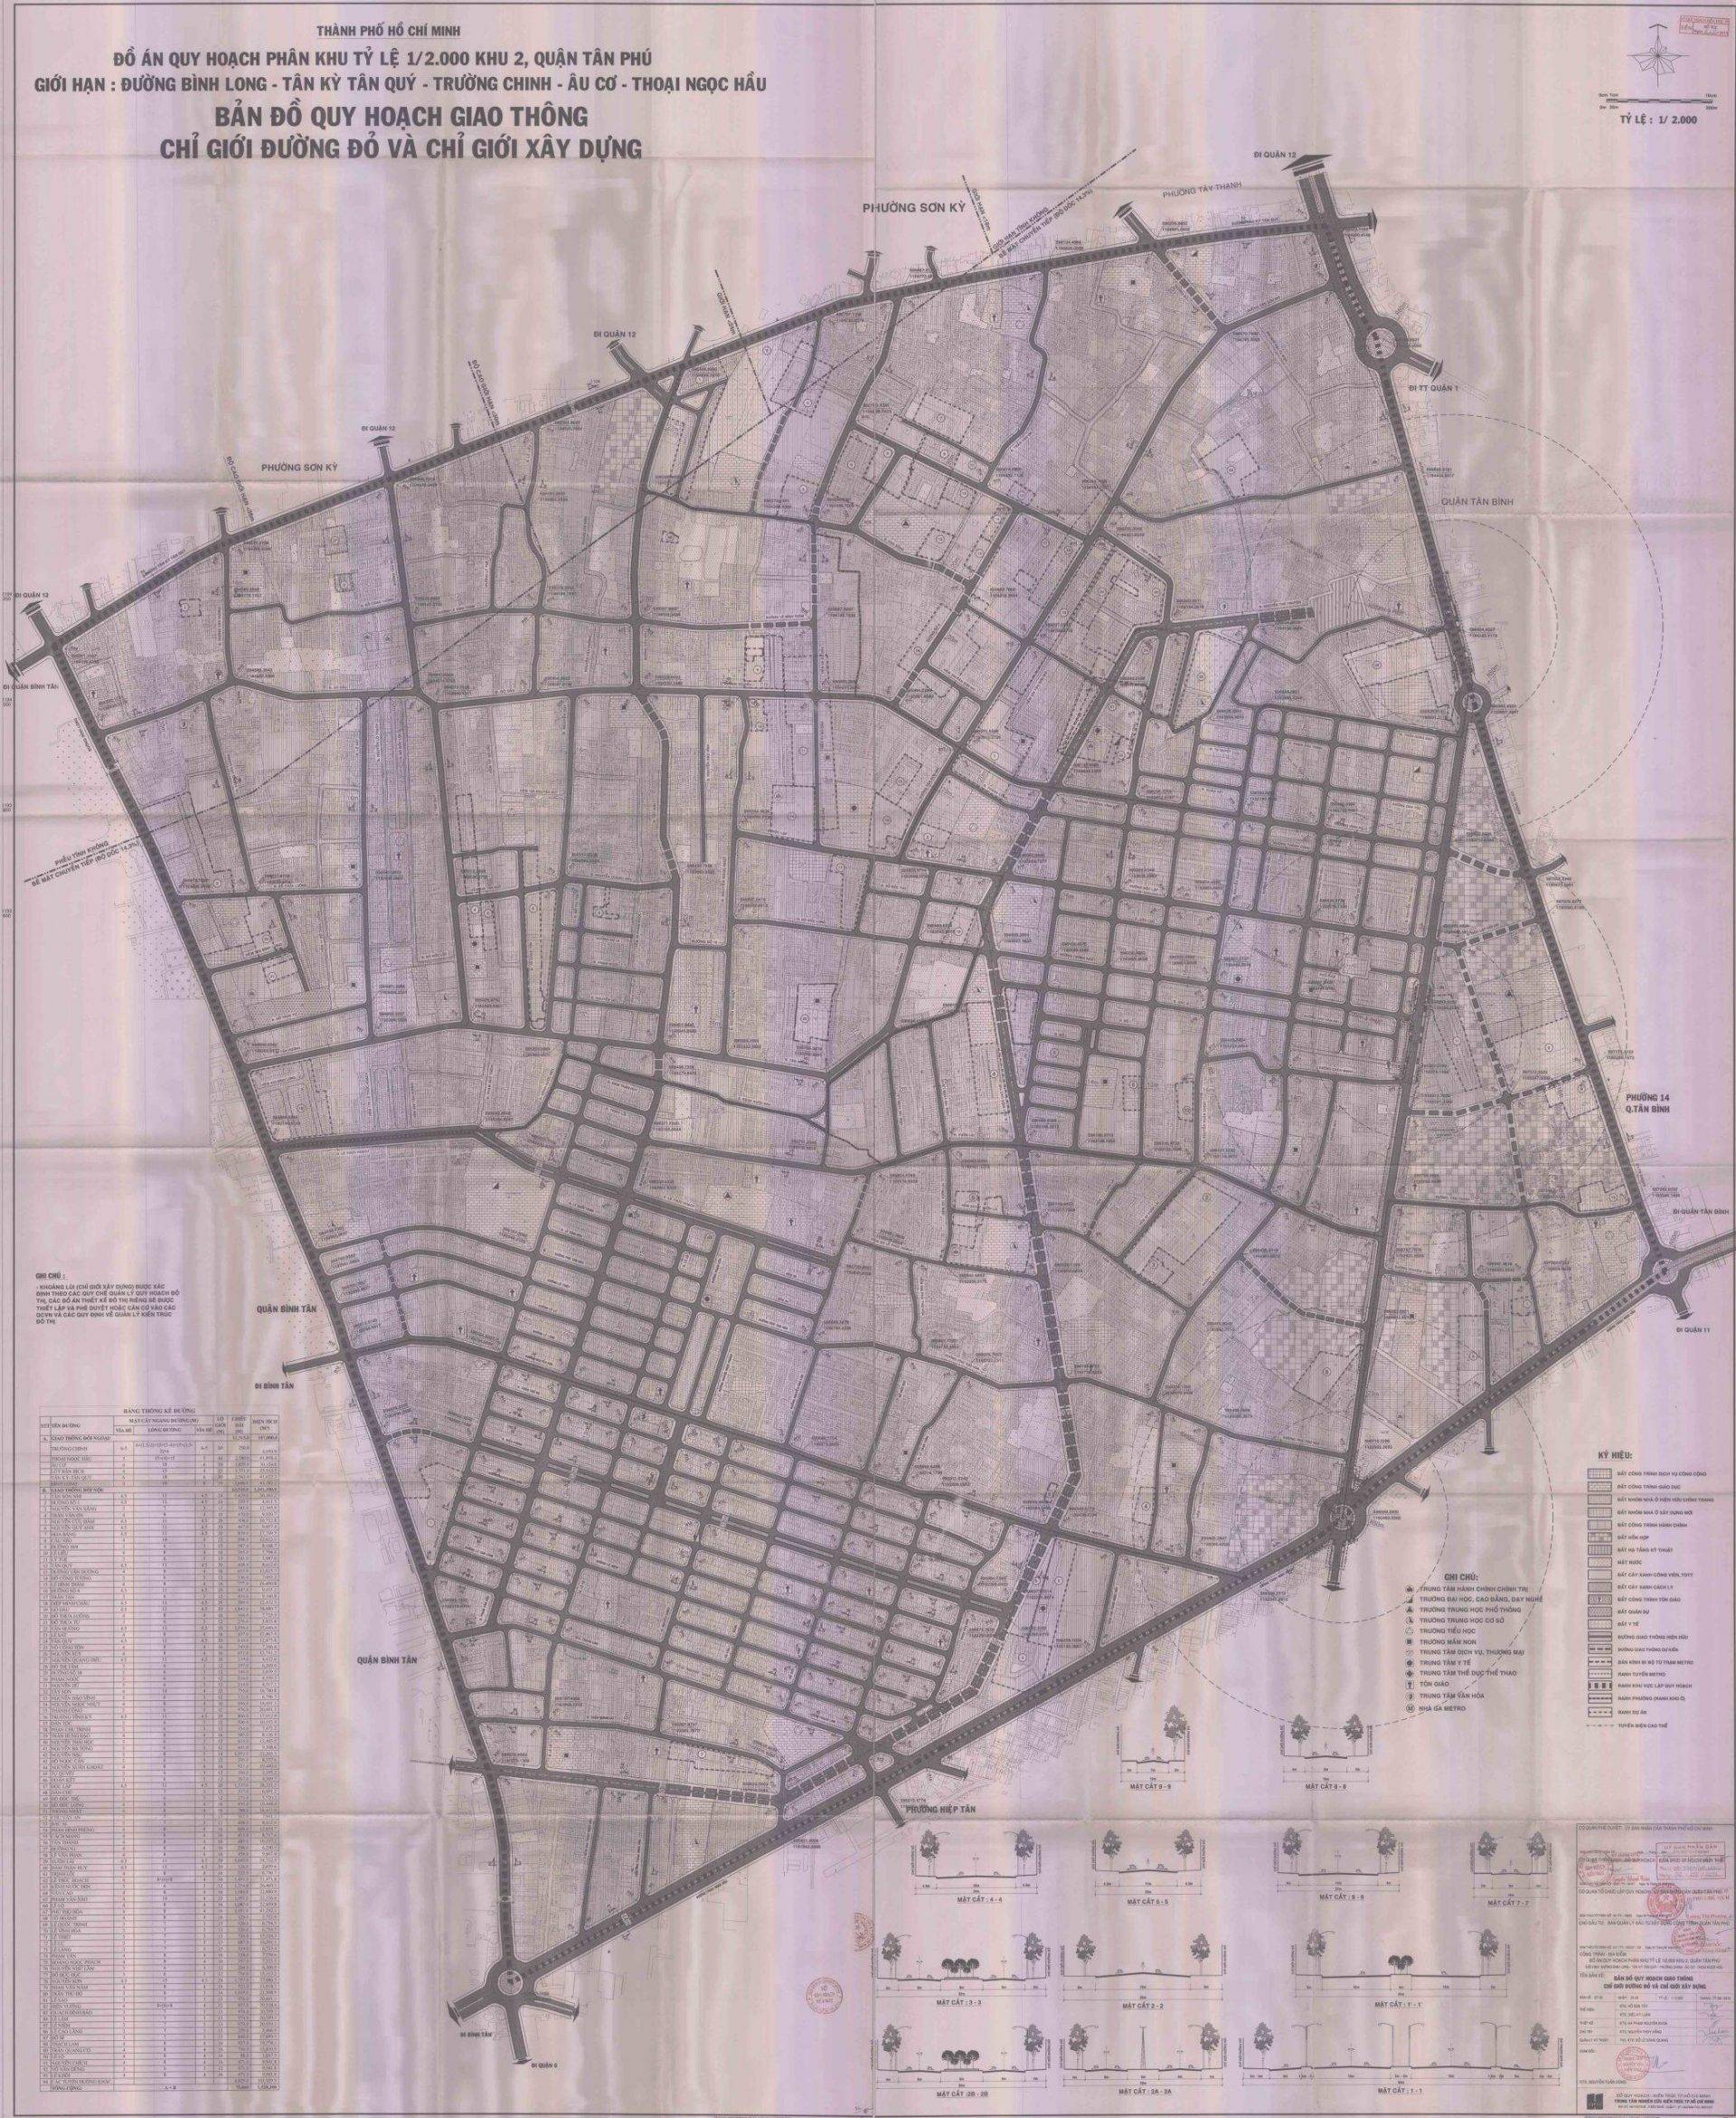 Bản đồ quy hoạch giao thông, chỉ giới đường bộ và xây dựng khu vực 2 - Yeshouse